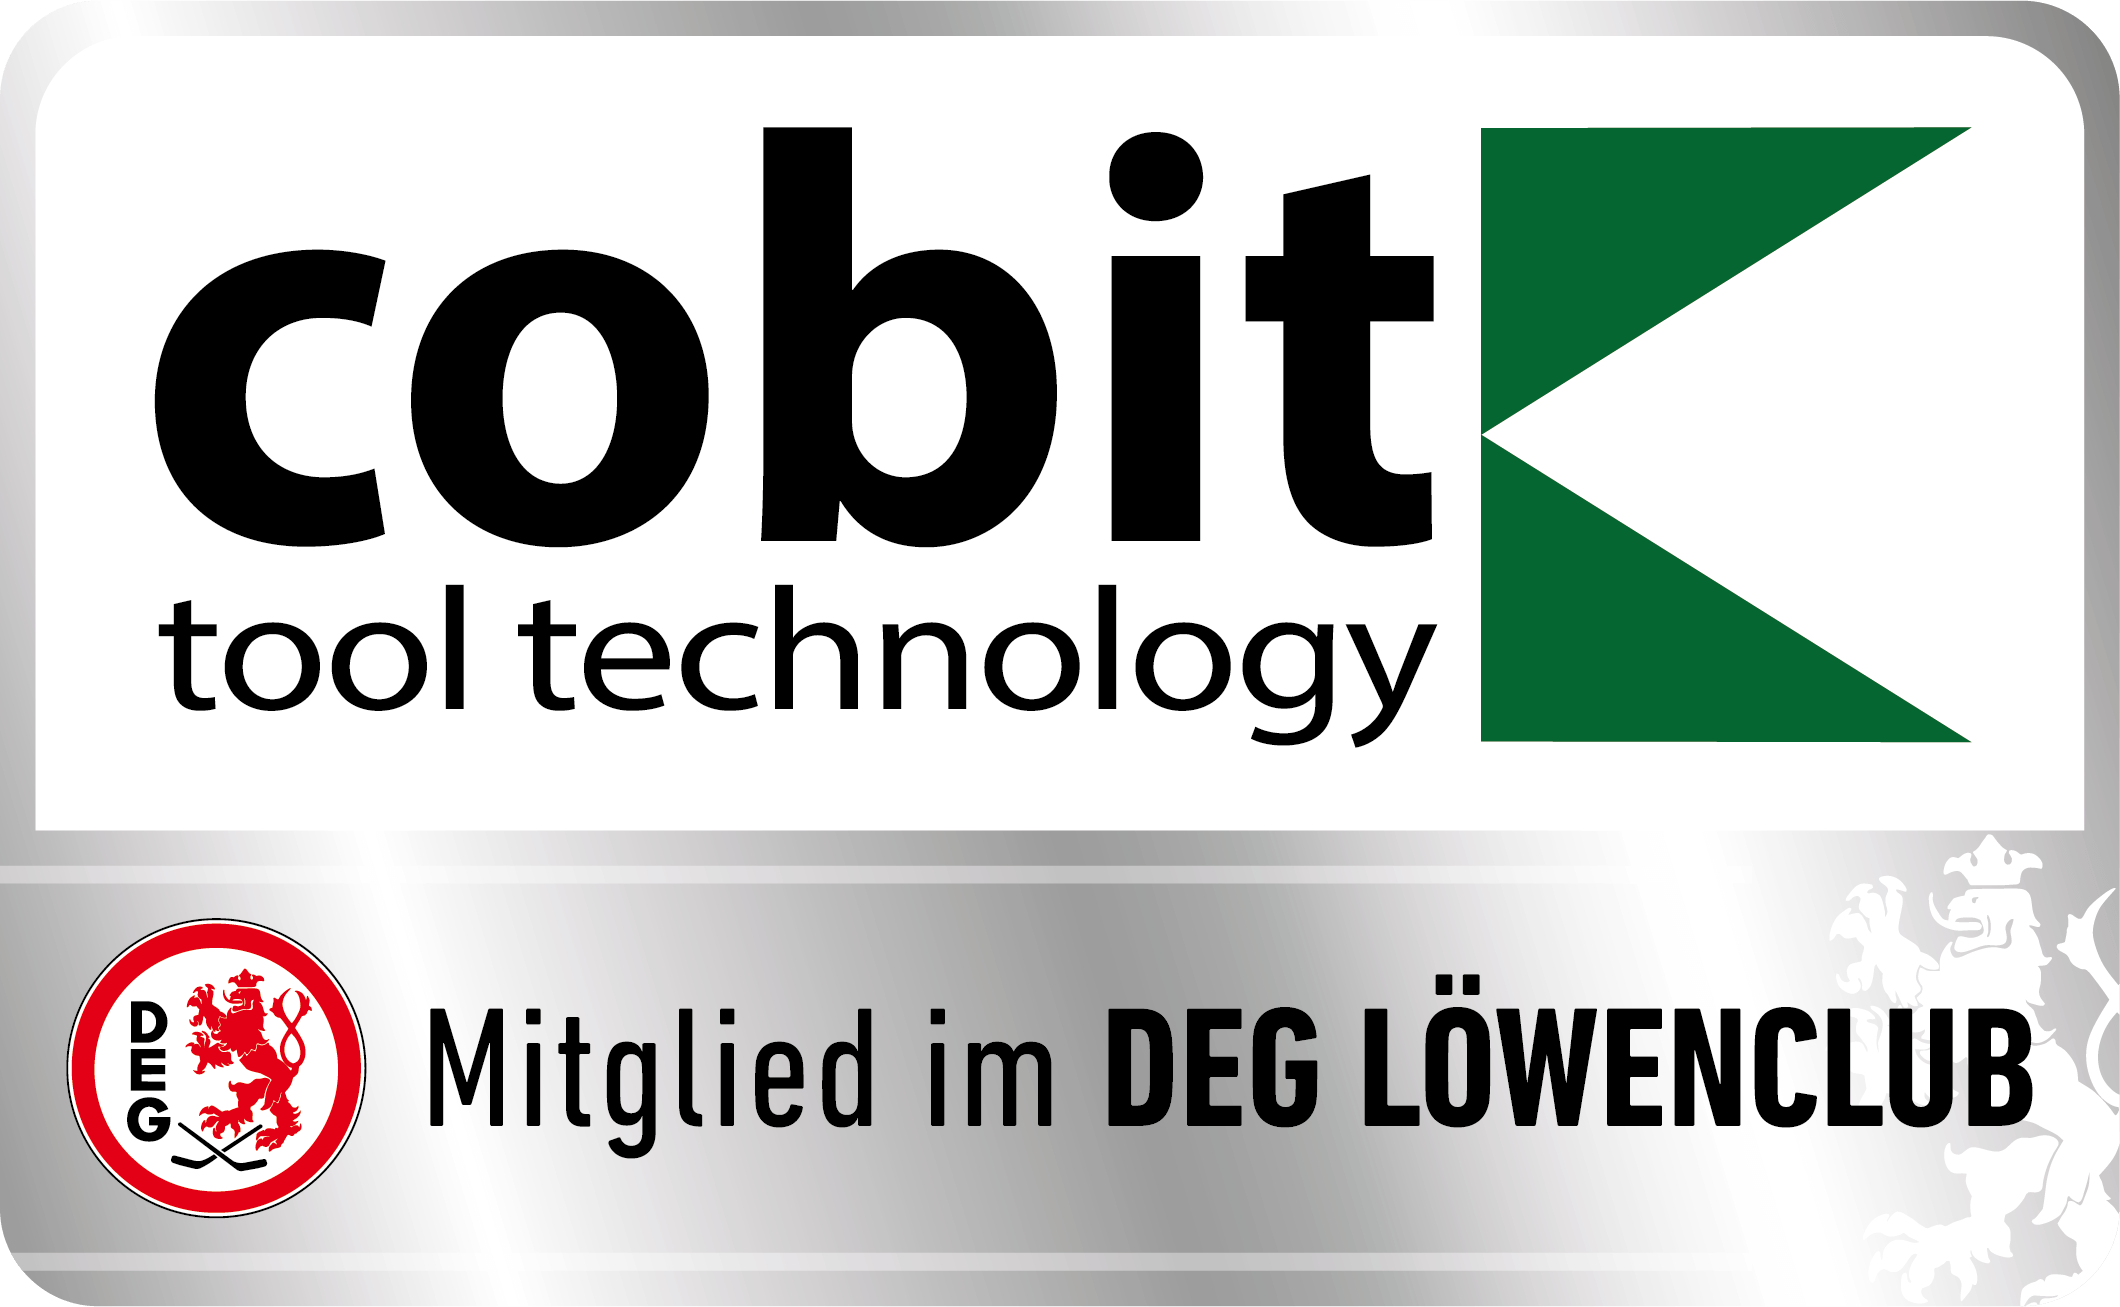 http://www.cobit.de/